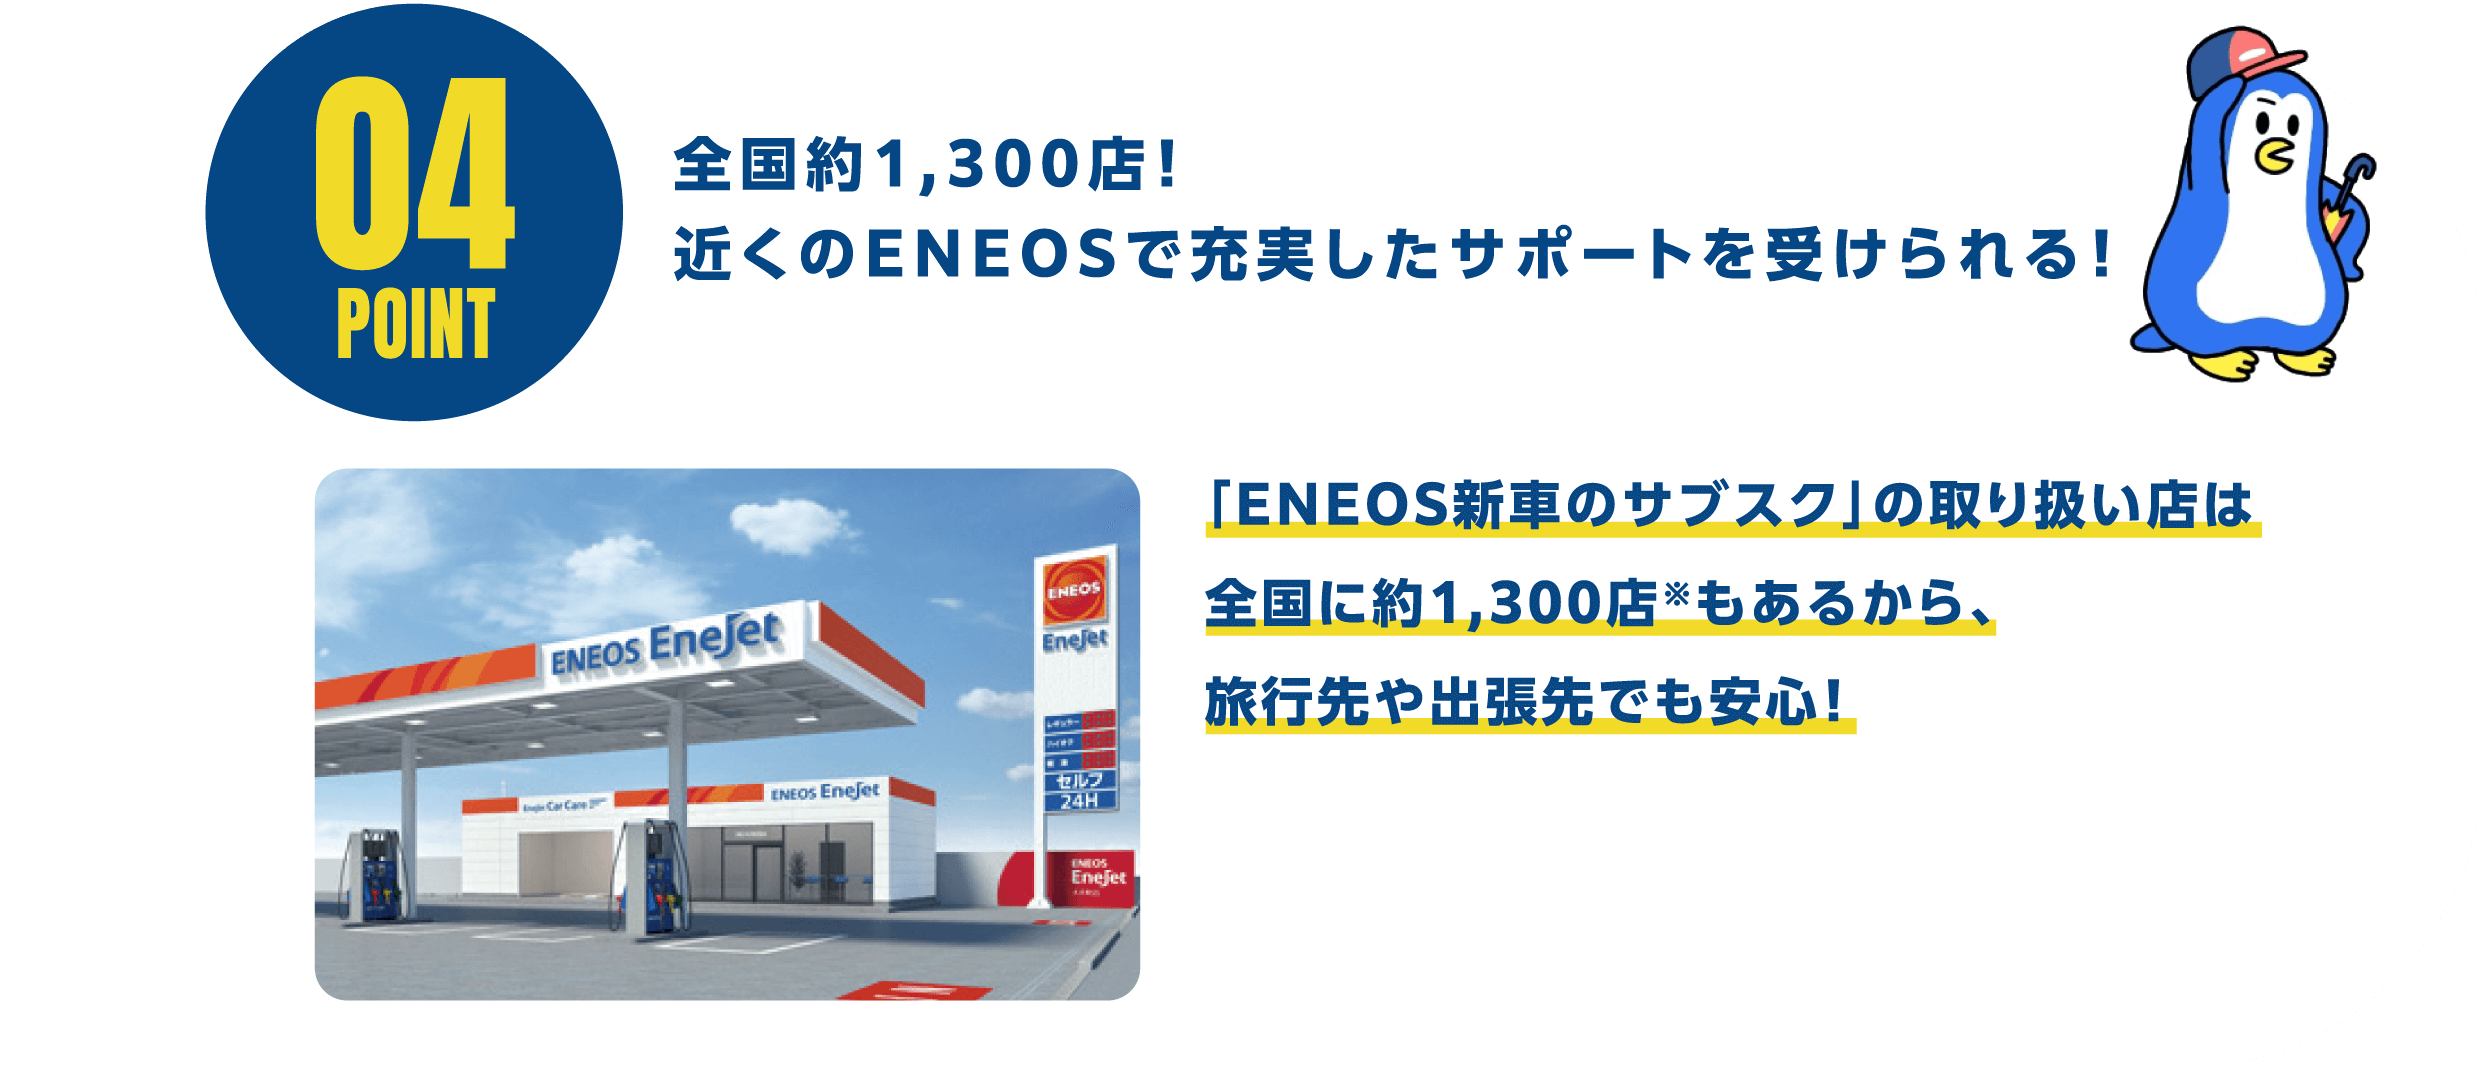 POINT04 全国約1,300店！近くのENEOSで充実したサポートを受けられる！「ENEOS新車のサブスク」の取り扱い店は全国に約1,300店※もあるから、旅行先や出張先でも安心！